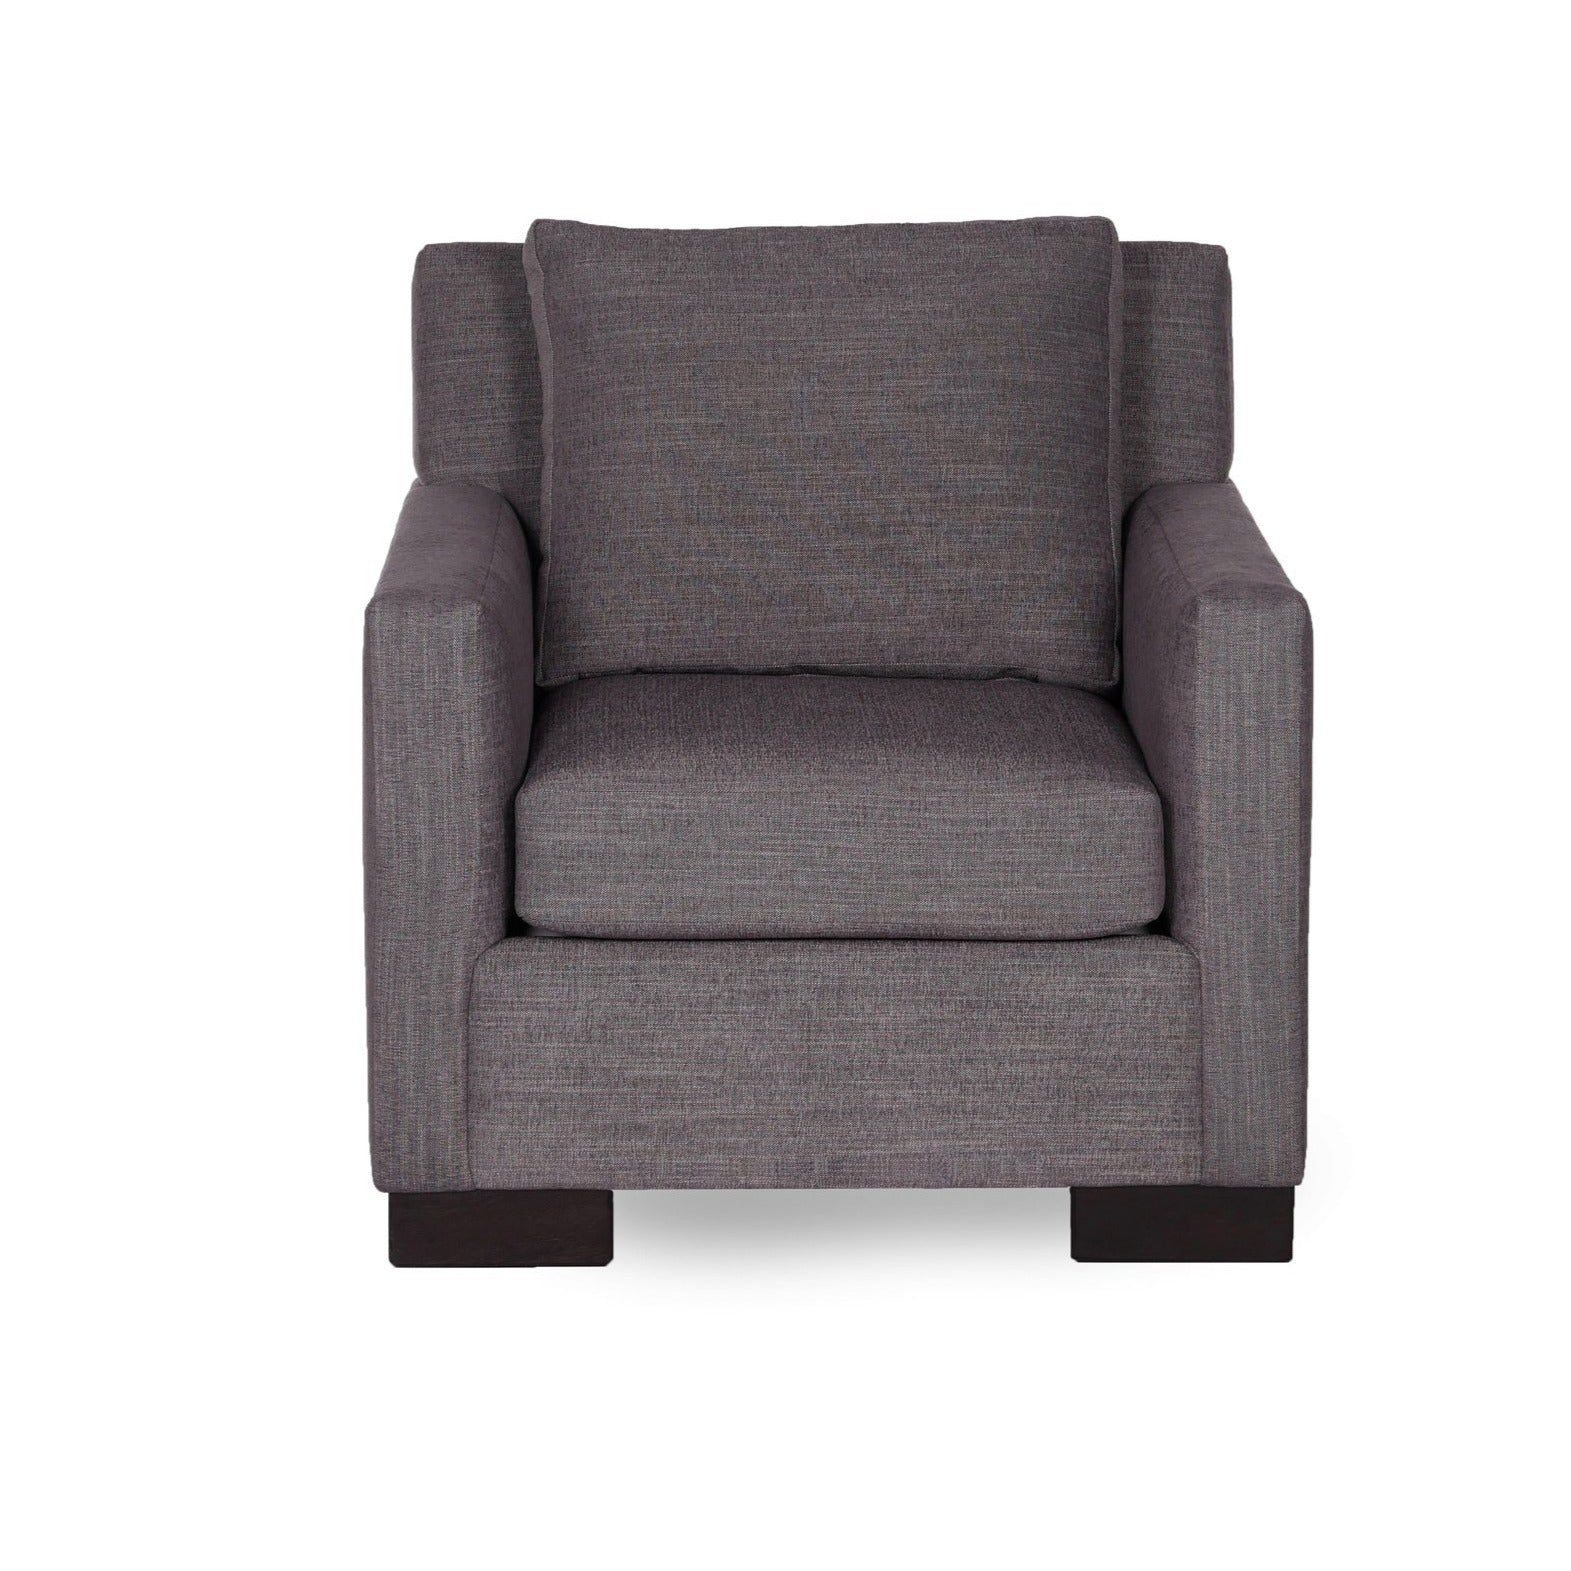 Benalto Chair- Customizable